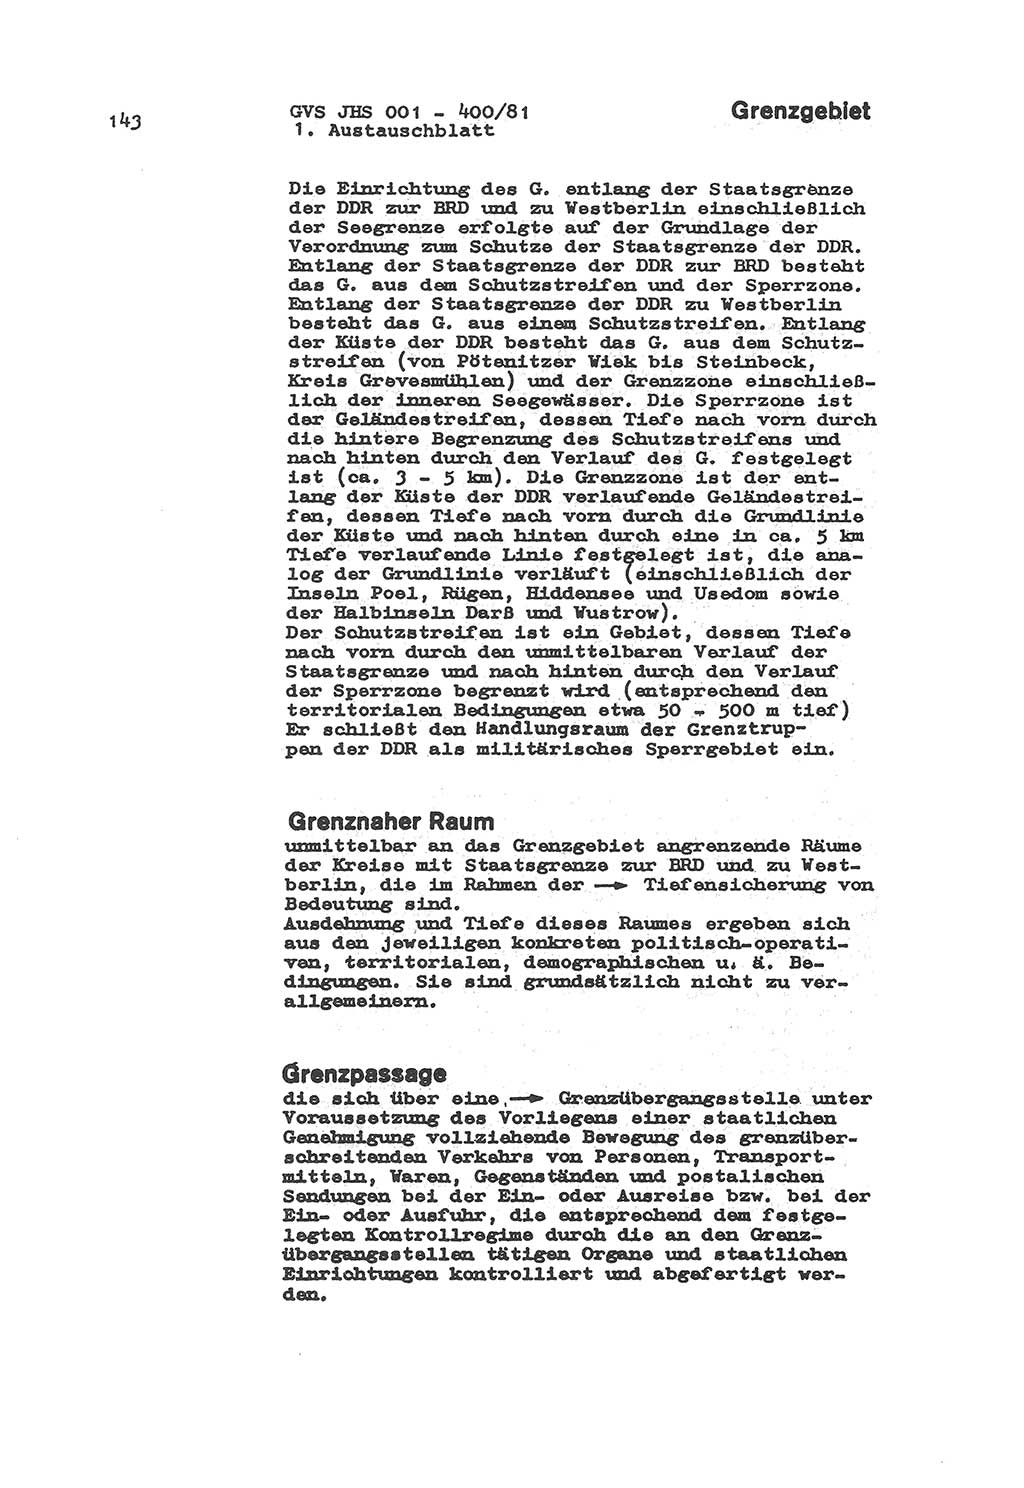 Wörterbuch der politisch-operativen Arbeit, Ministerium für Staatssicherheit (MfS) [Deutsche Demokratische Republik (DDR)], Juristische Hochschule (JHS), Geheime Verschlußsache (GVS) o001-400/81, Potsdam 1985, Blatt 143 (Wb. pol.-op. Arb. MfS DDR JHS GVS o001-400/81 1985, Bl. 143)